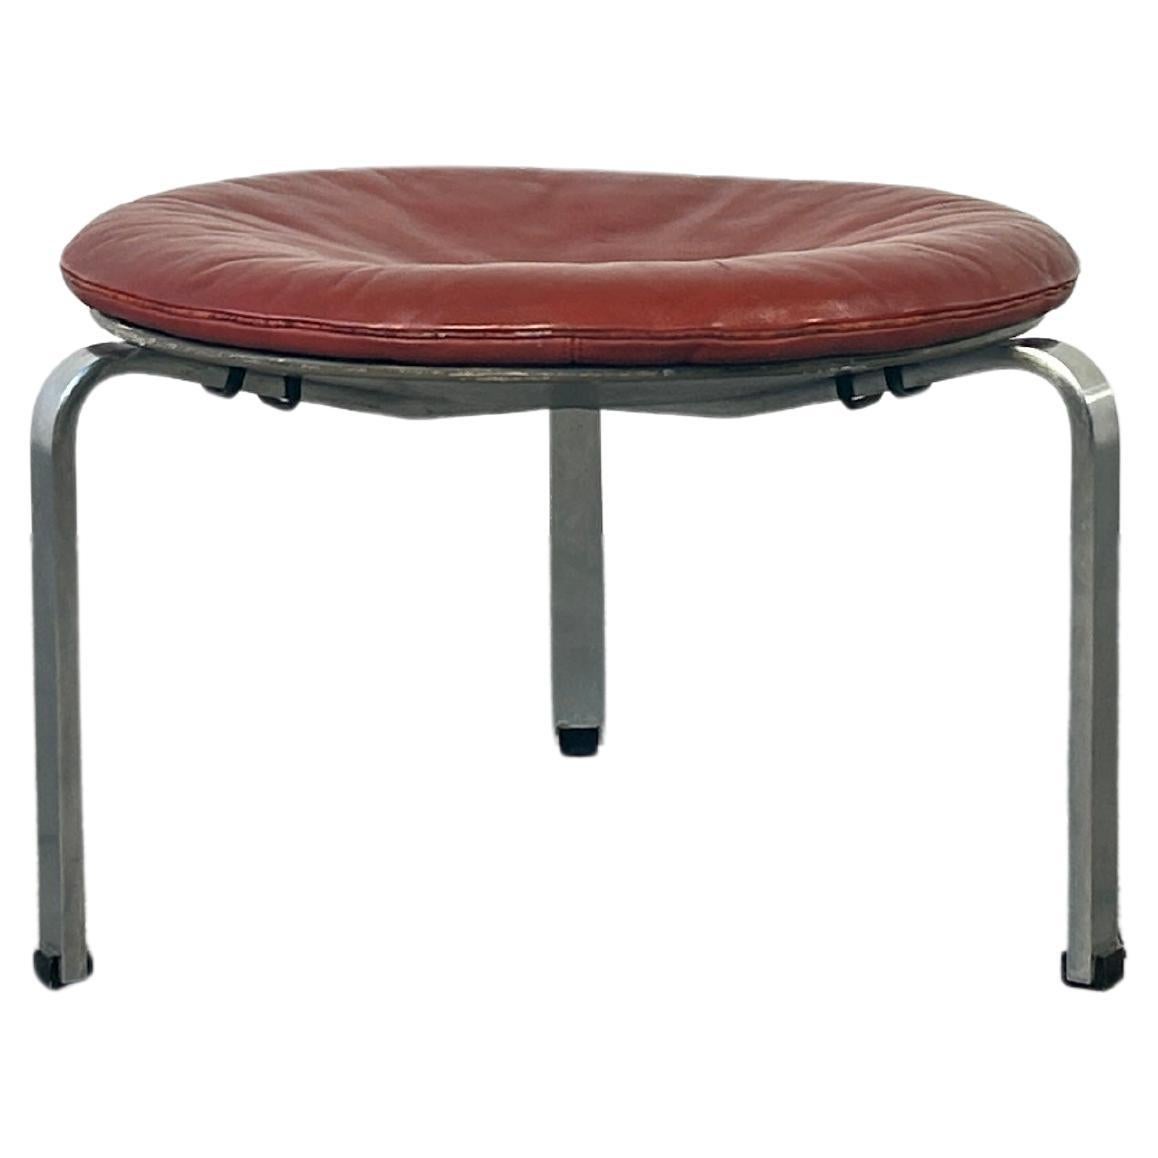 PK33 stool designed by Poul Khaerholm for Kold Christensen, Denmark For Sale